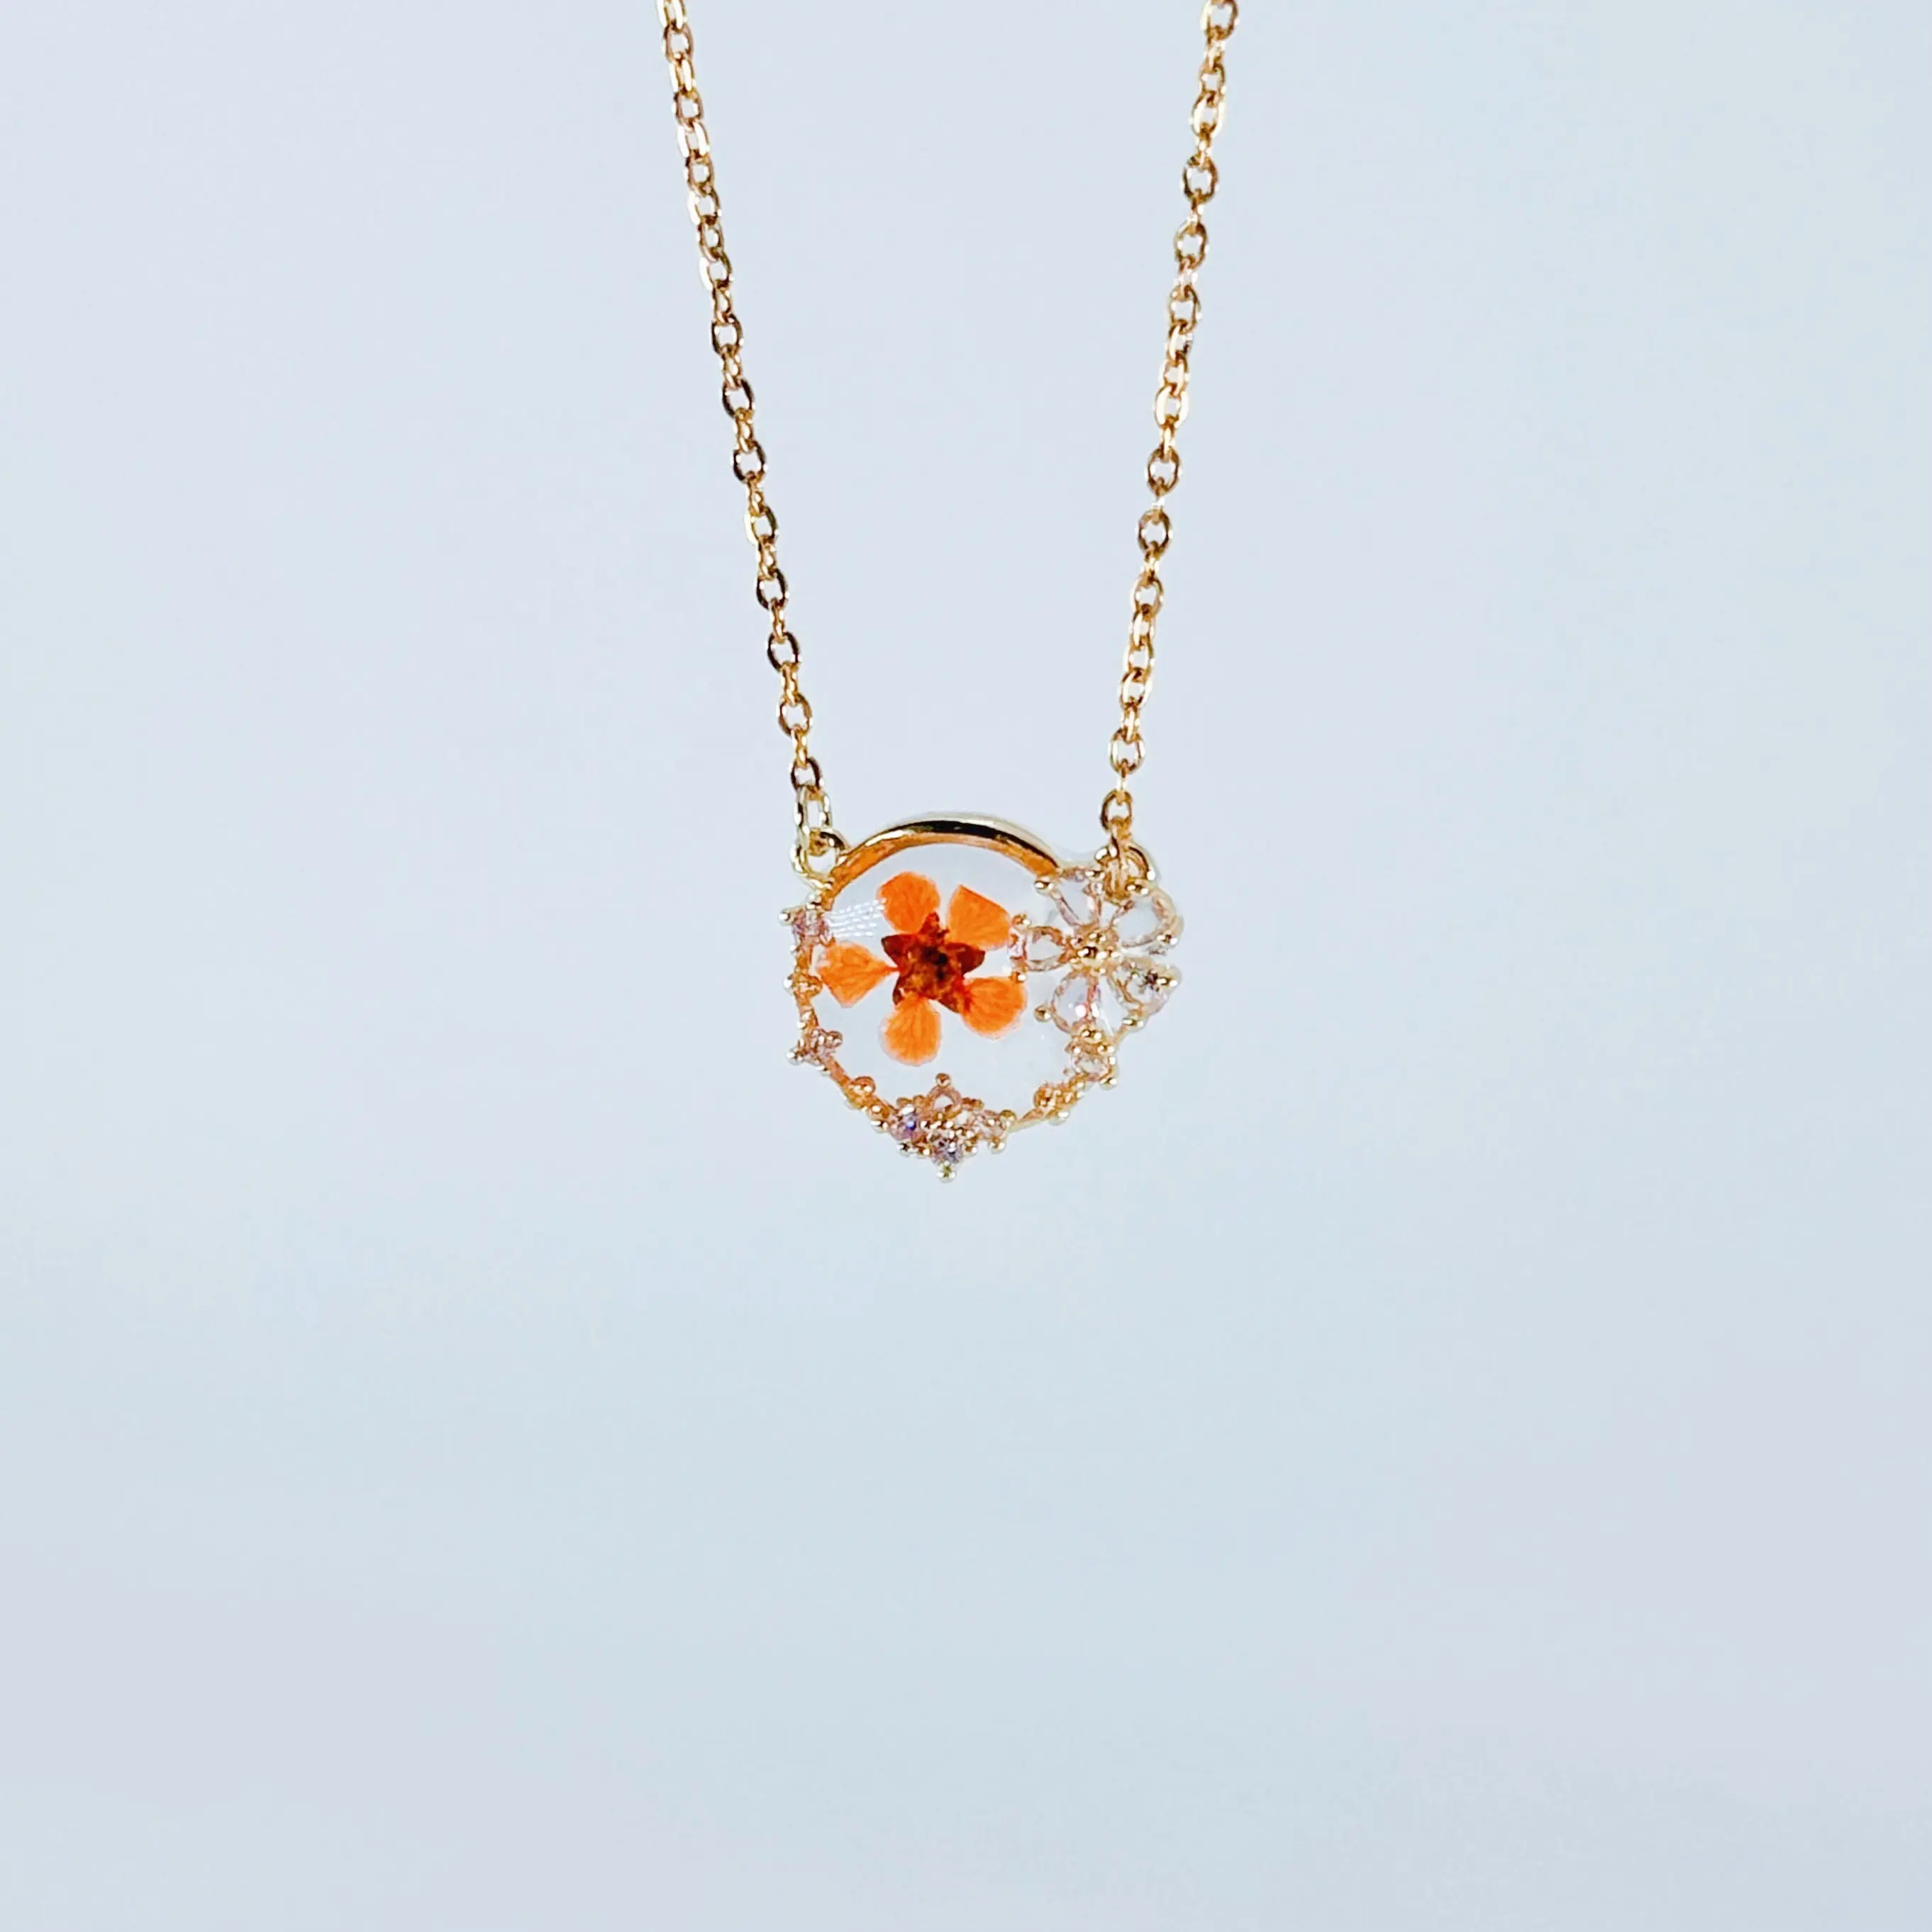 Collar de flores secas hecho a mano, joyería transparente, collar de diseño circular decorado con flores